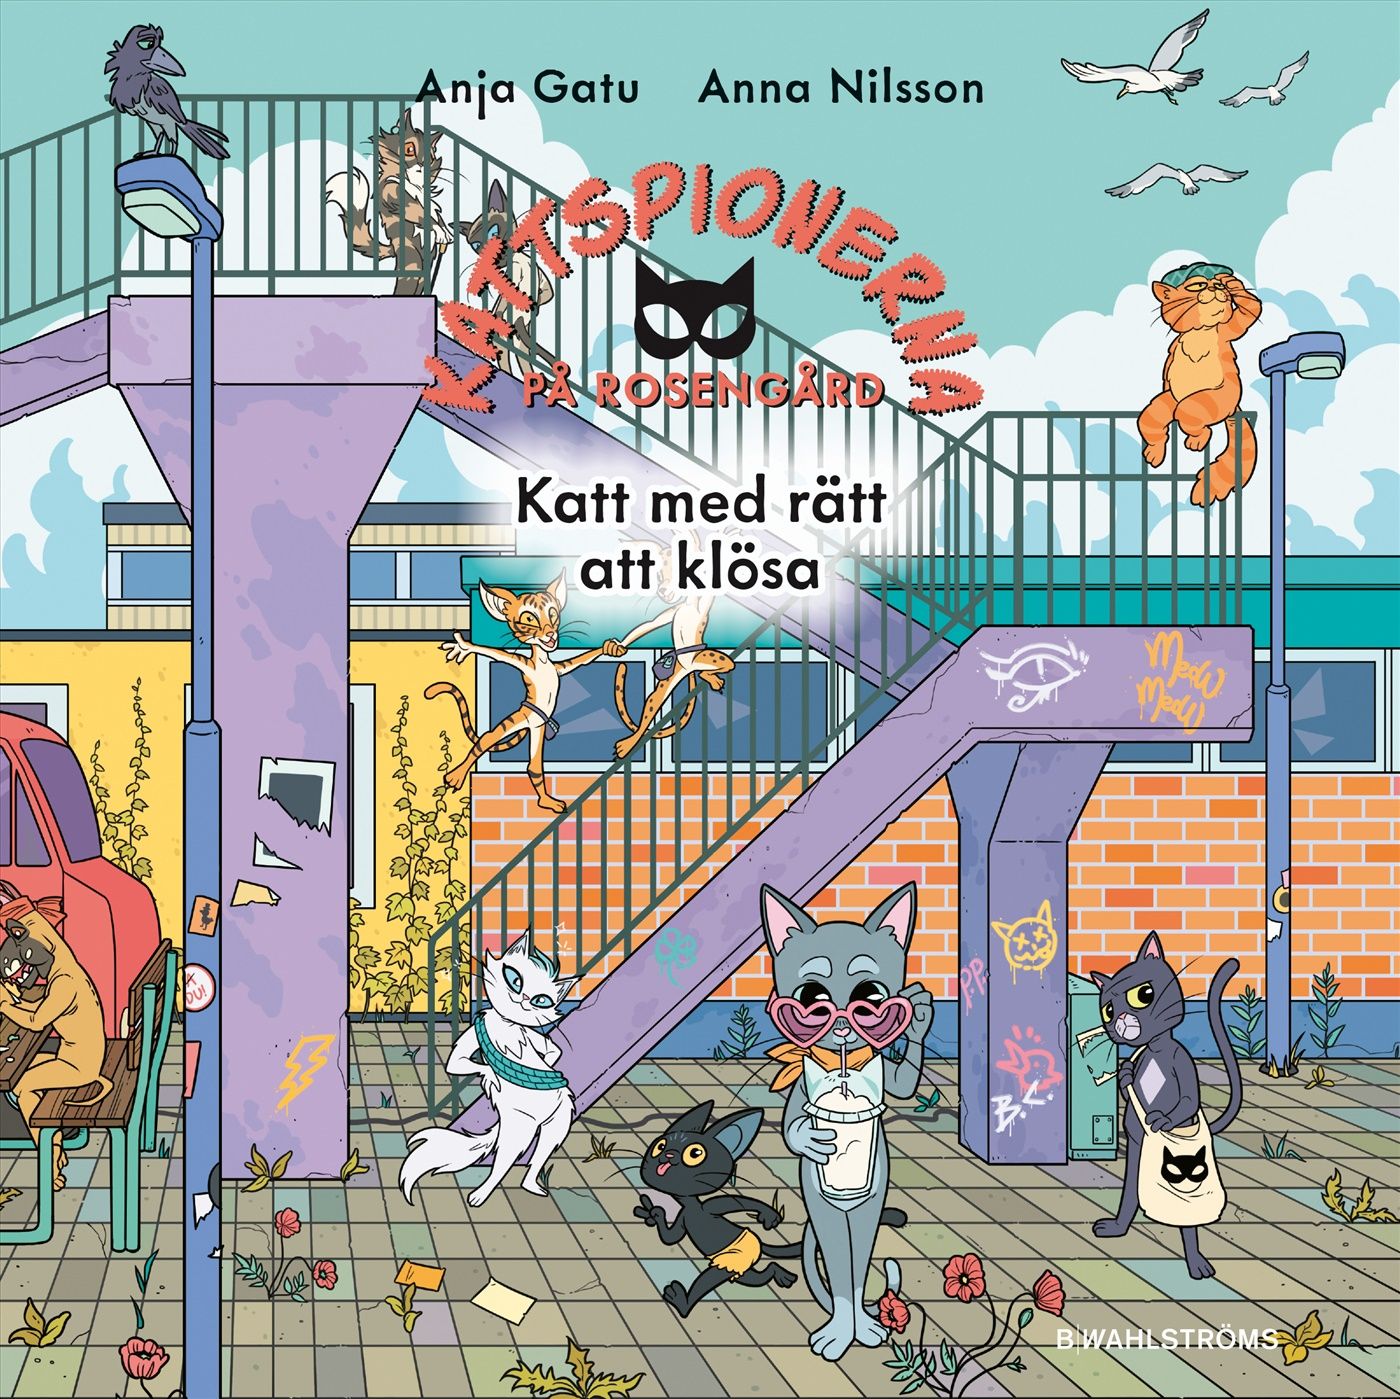 Katt med rätt att klösa, ljudbok av Anja Gatu